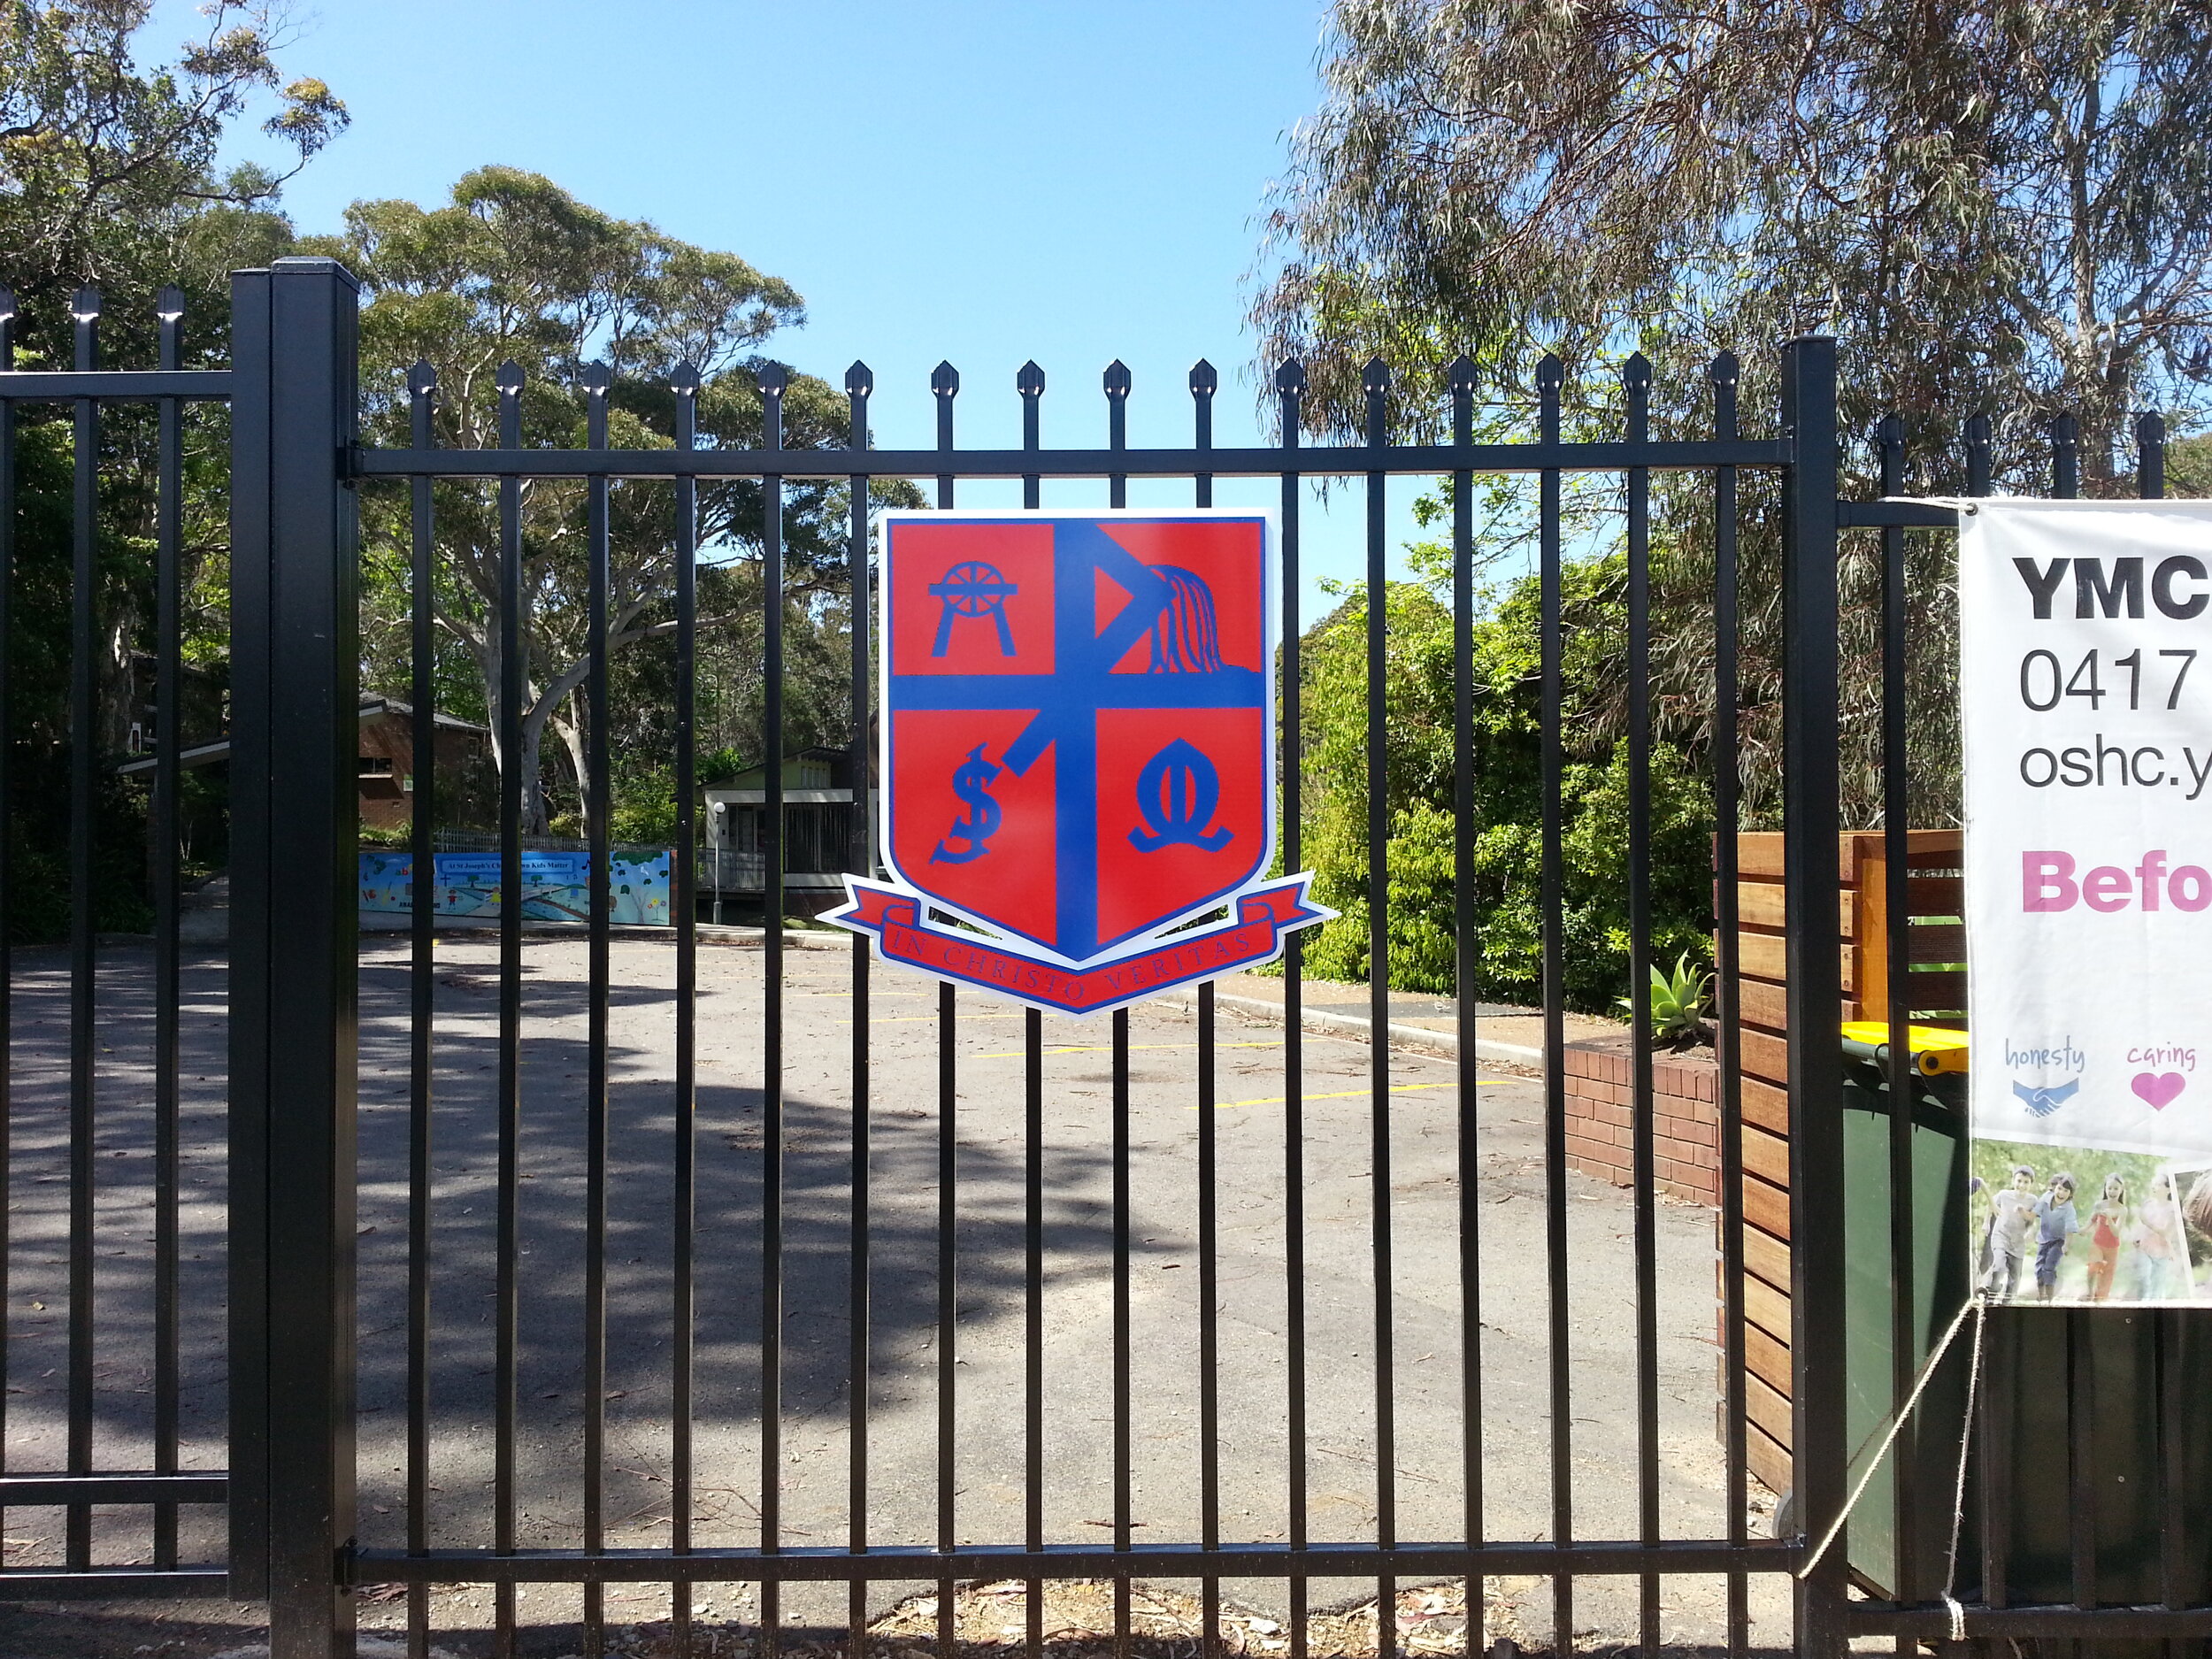 st Josephs school front gate 3d sign.jpg